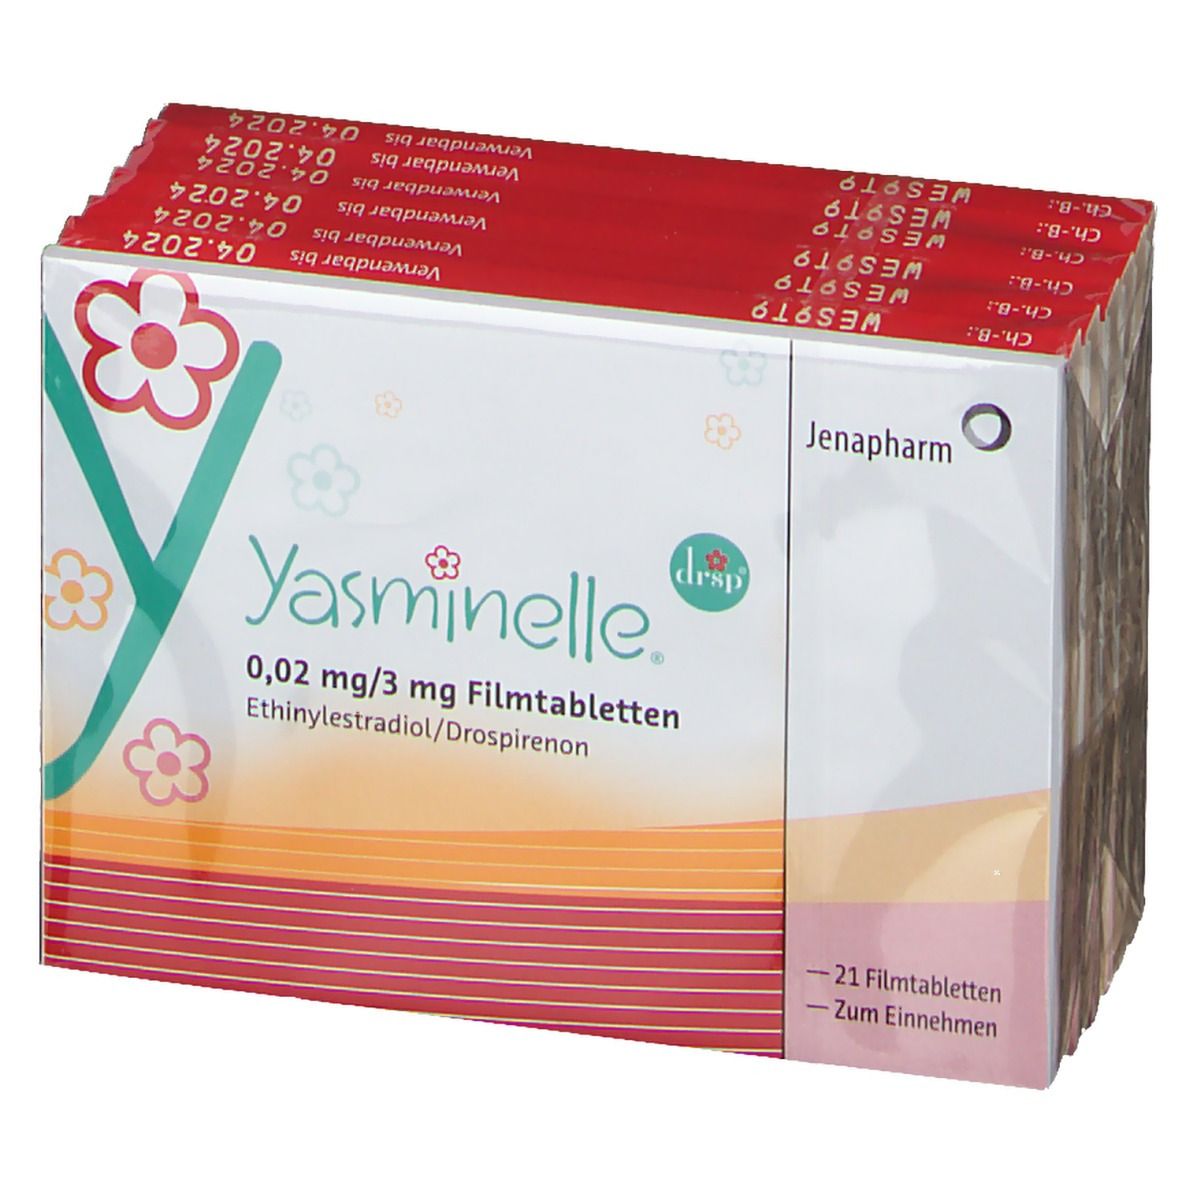 Yasminelle® 0,02 mg/3 mg